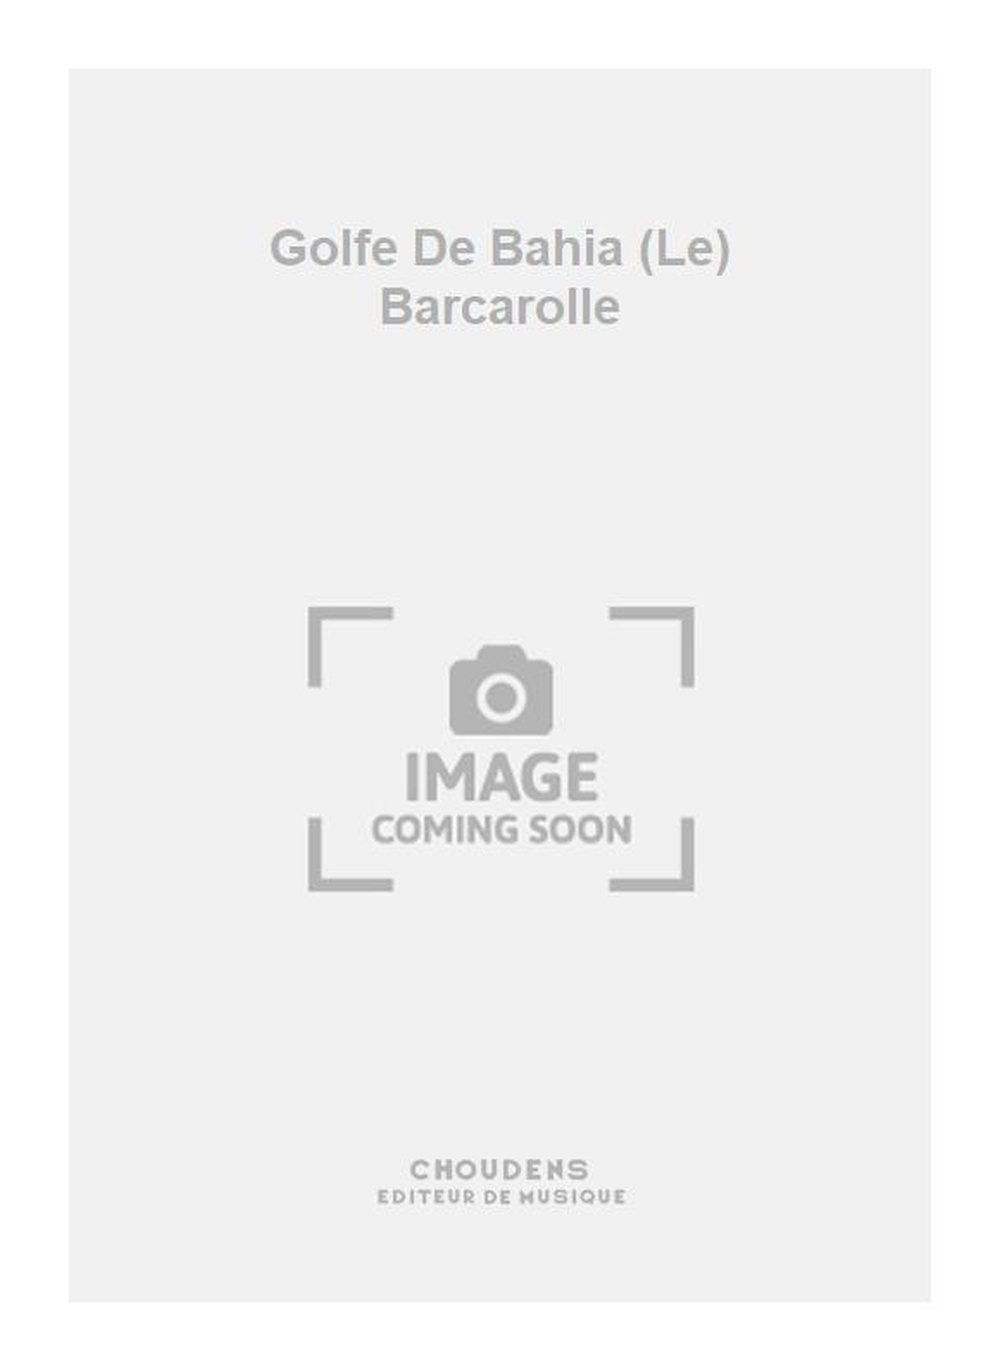 Georges Bizet: Golfe De Bahia (Le) Barcarolle